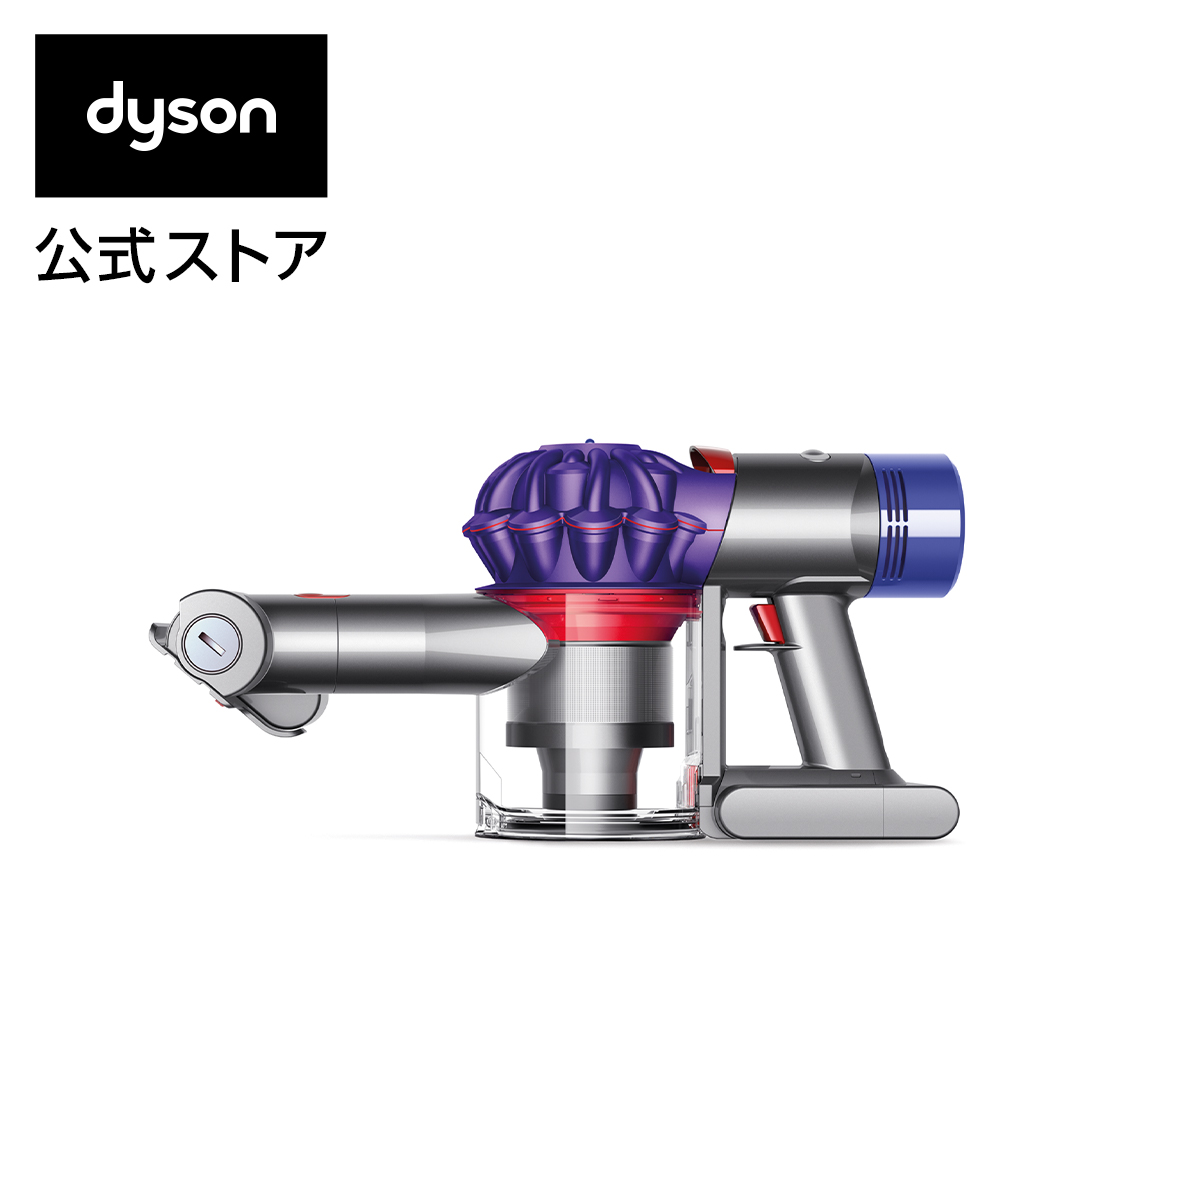 楽天市場 ダイソン Dyson V7 Car Boat ハンディクリーナー 掃除機 サイクロン式掃除機 Hh11 Mh Cb 17年モデル Dyson公式 楽天市場店